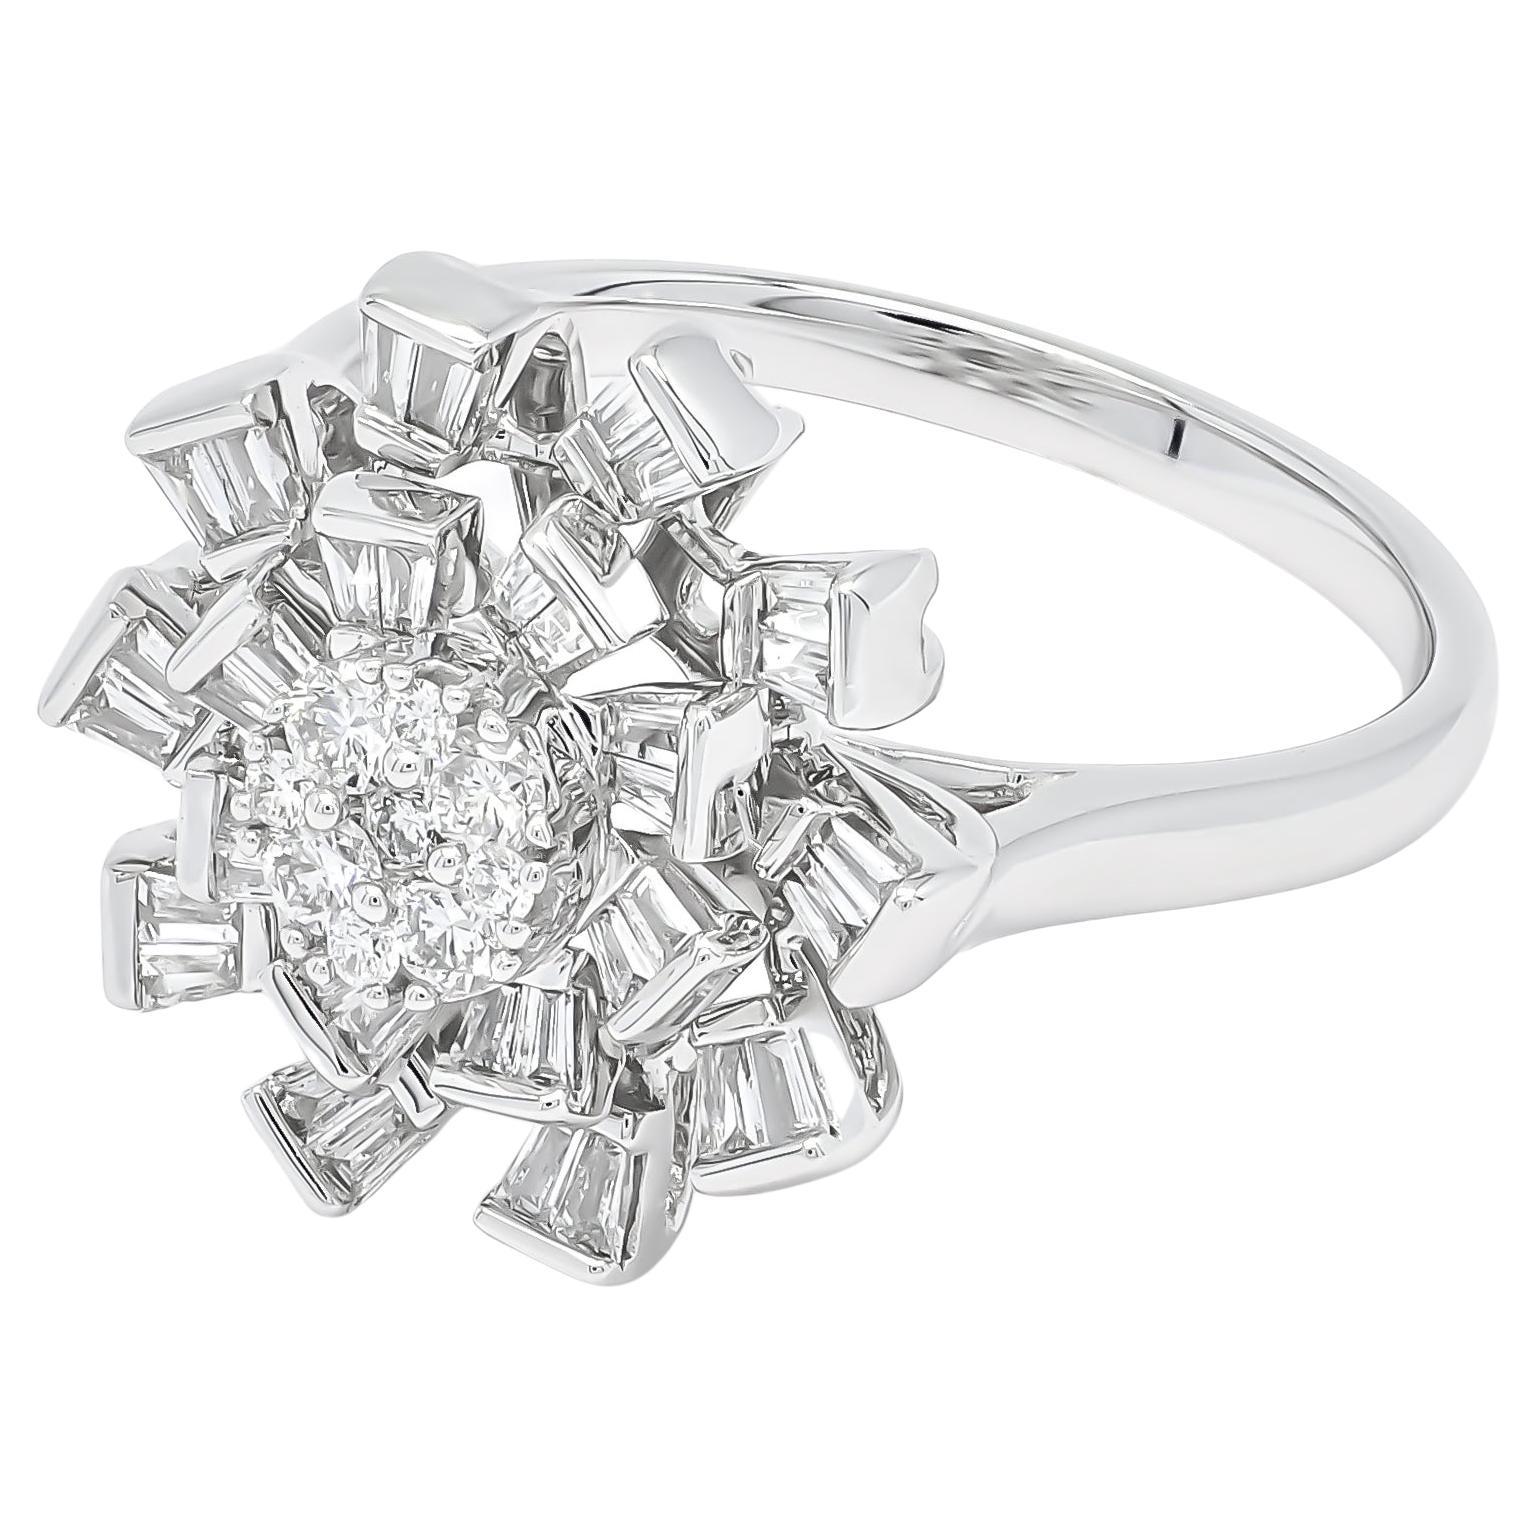 Natural Diamond 0.64 carats 18 Karat White Gold High Fashion Cocktail Ring